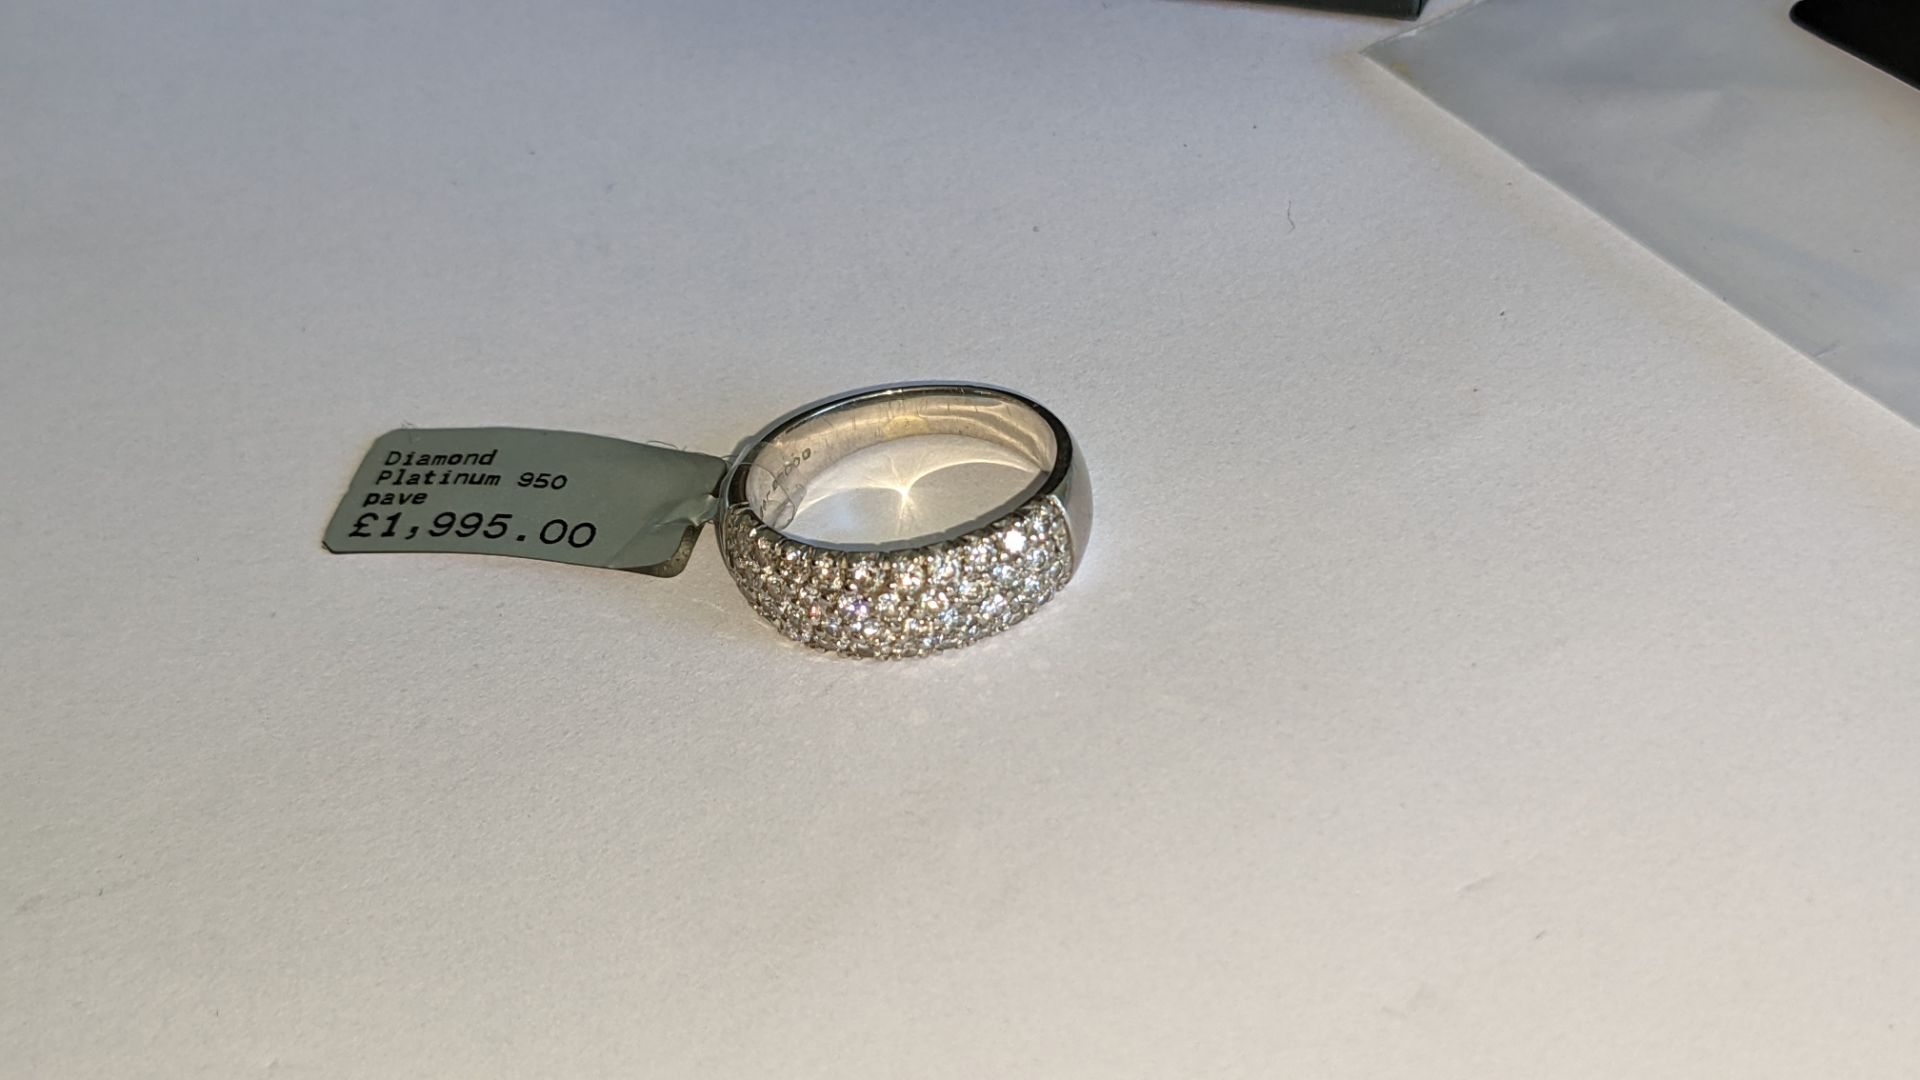 Platinum 950 & pave diamond ring. RRP £1,995 - Image 10 of 19